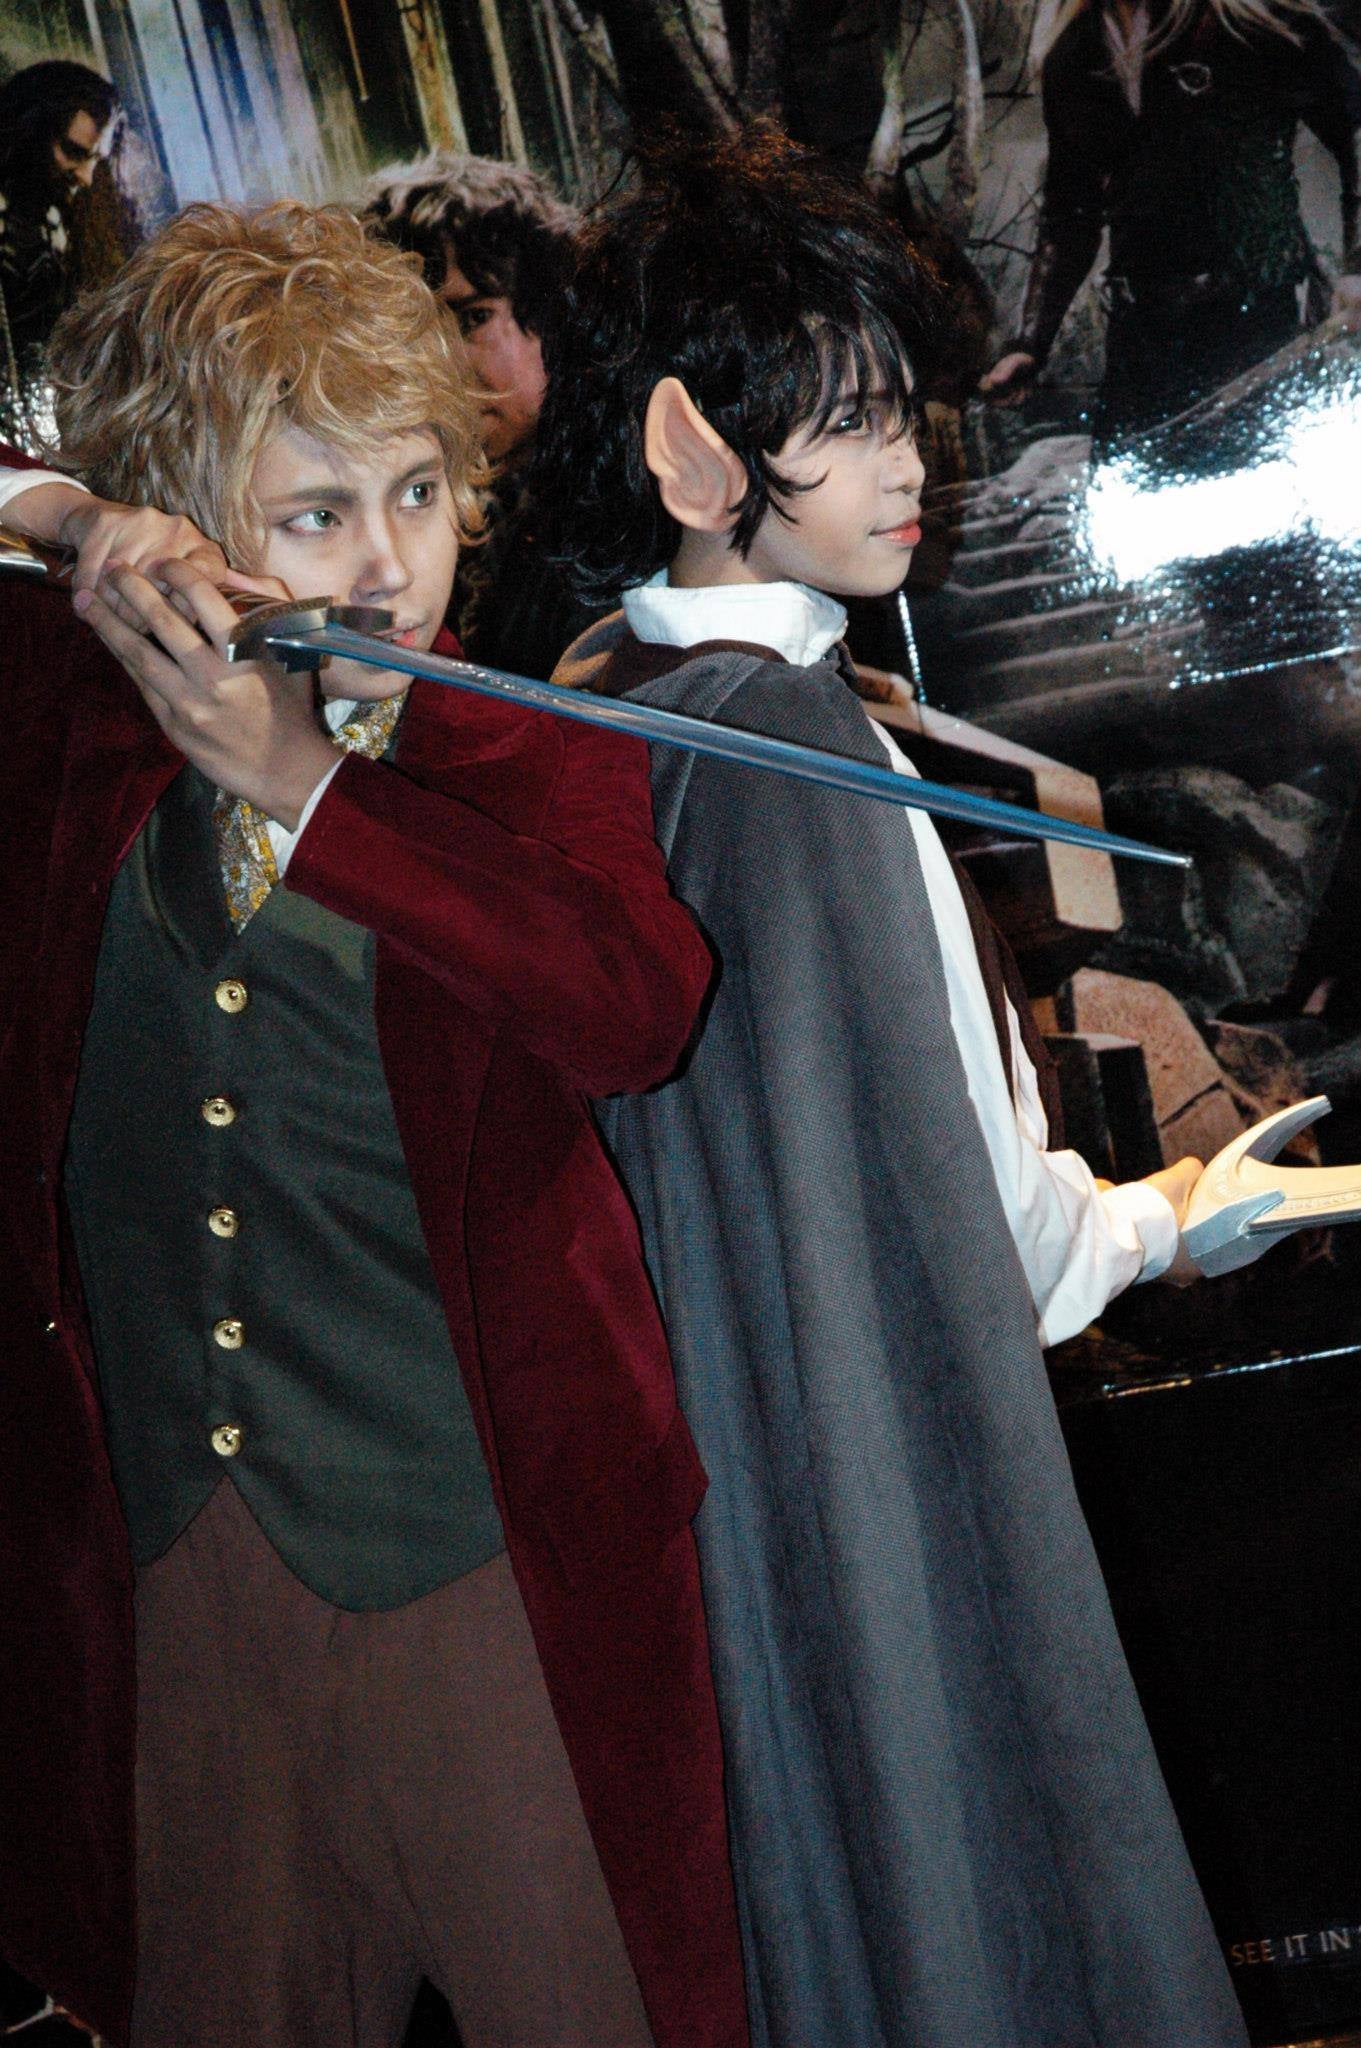 Micho as Bilbo Baggins photo by Potter